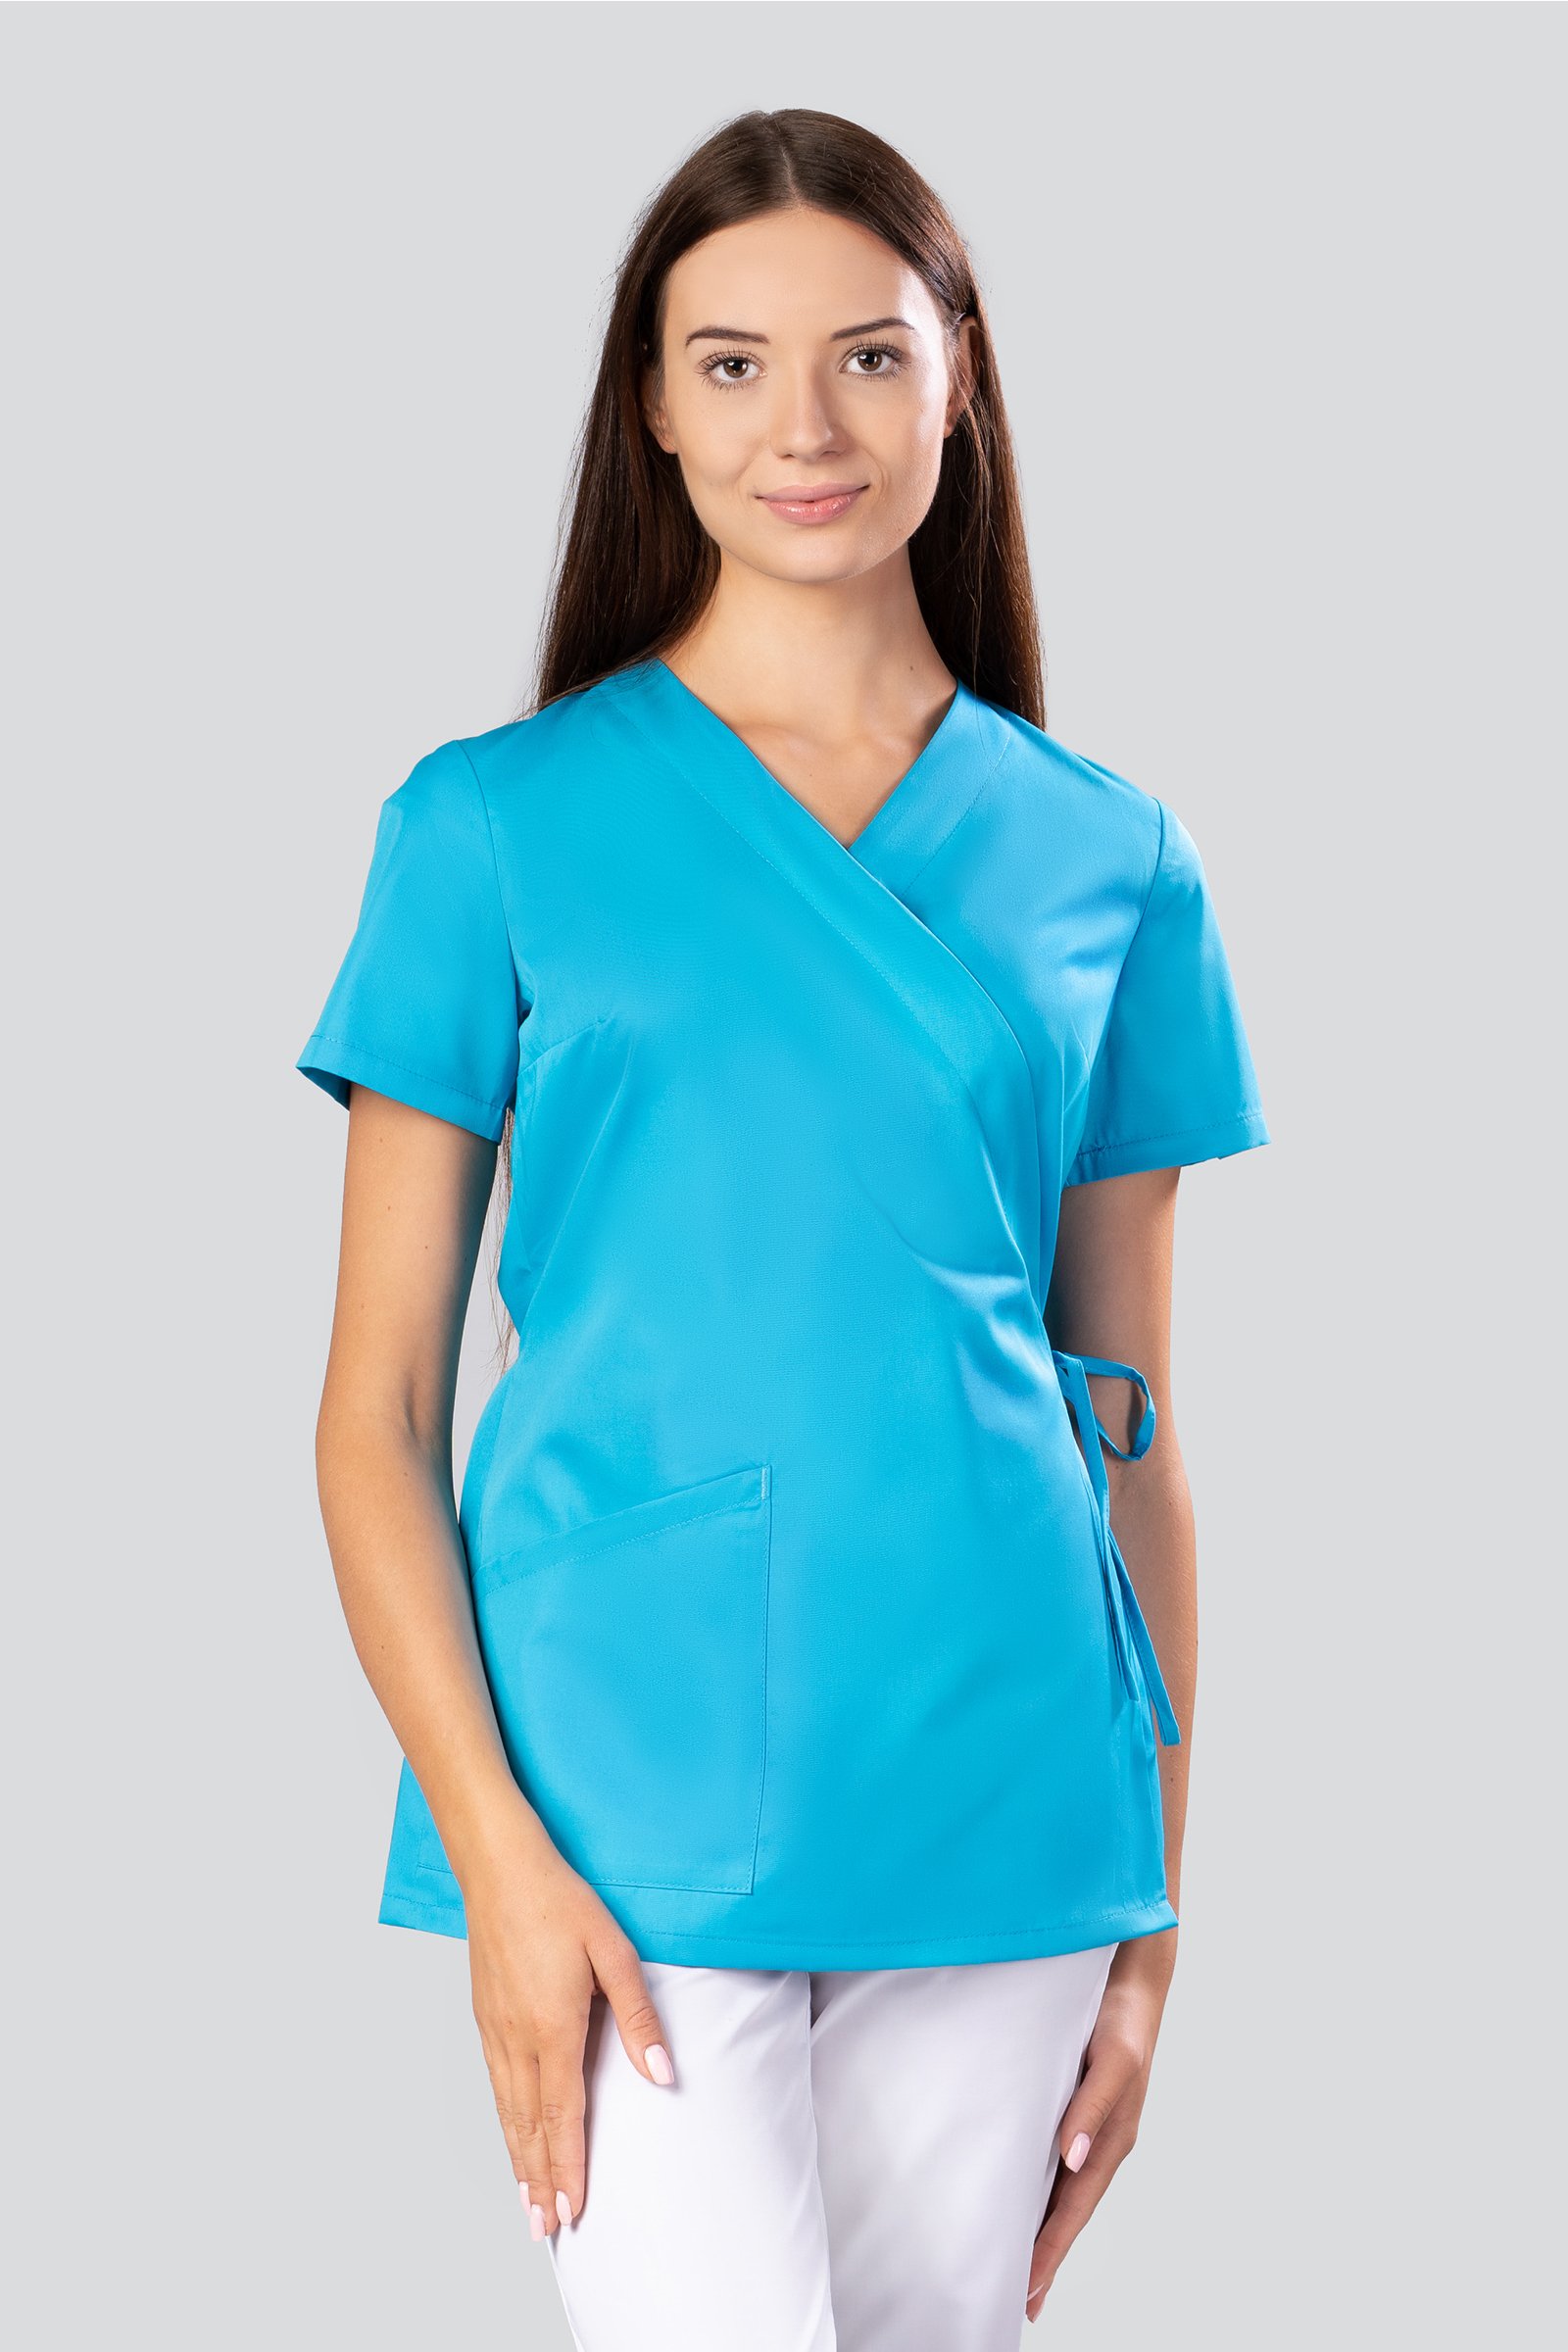 bluza-medyczna-wi-zana-2-kieszenie-select-fason-kimonowy-lazurowa